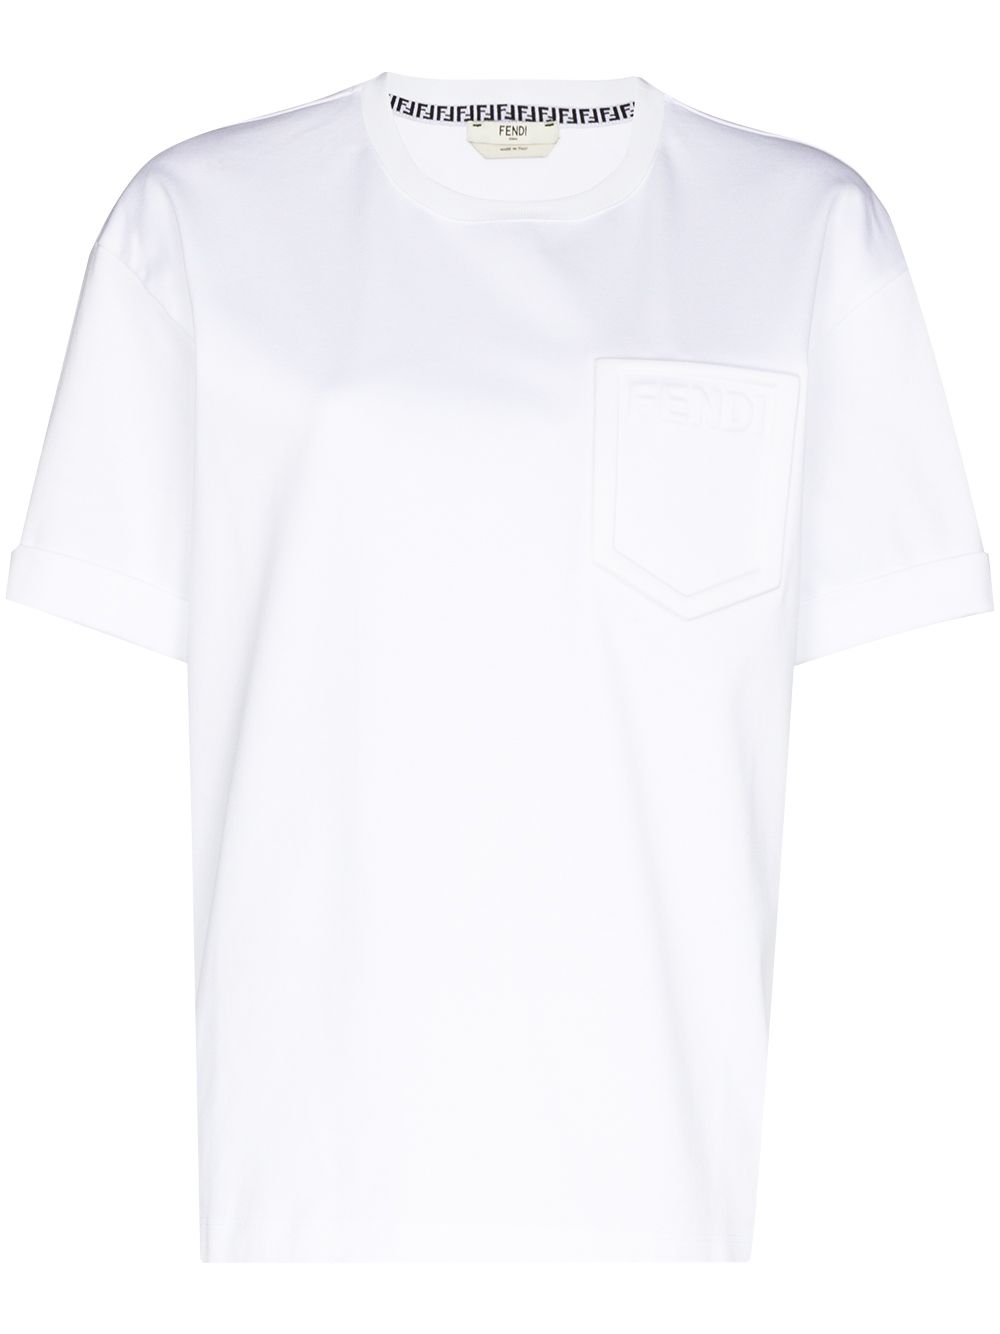 фото Fendi футболка с тисненым логотипом